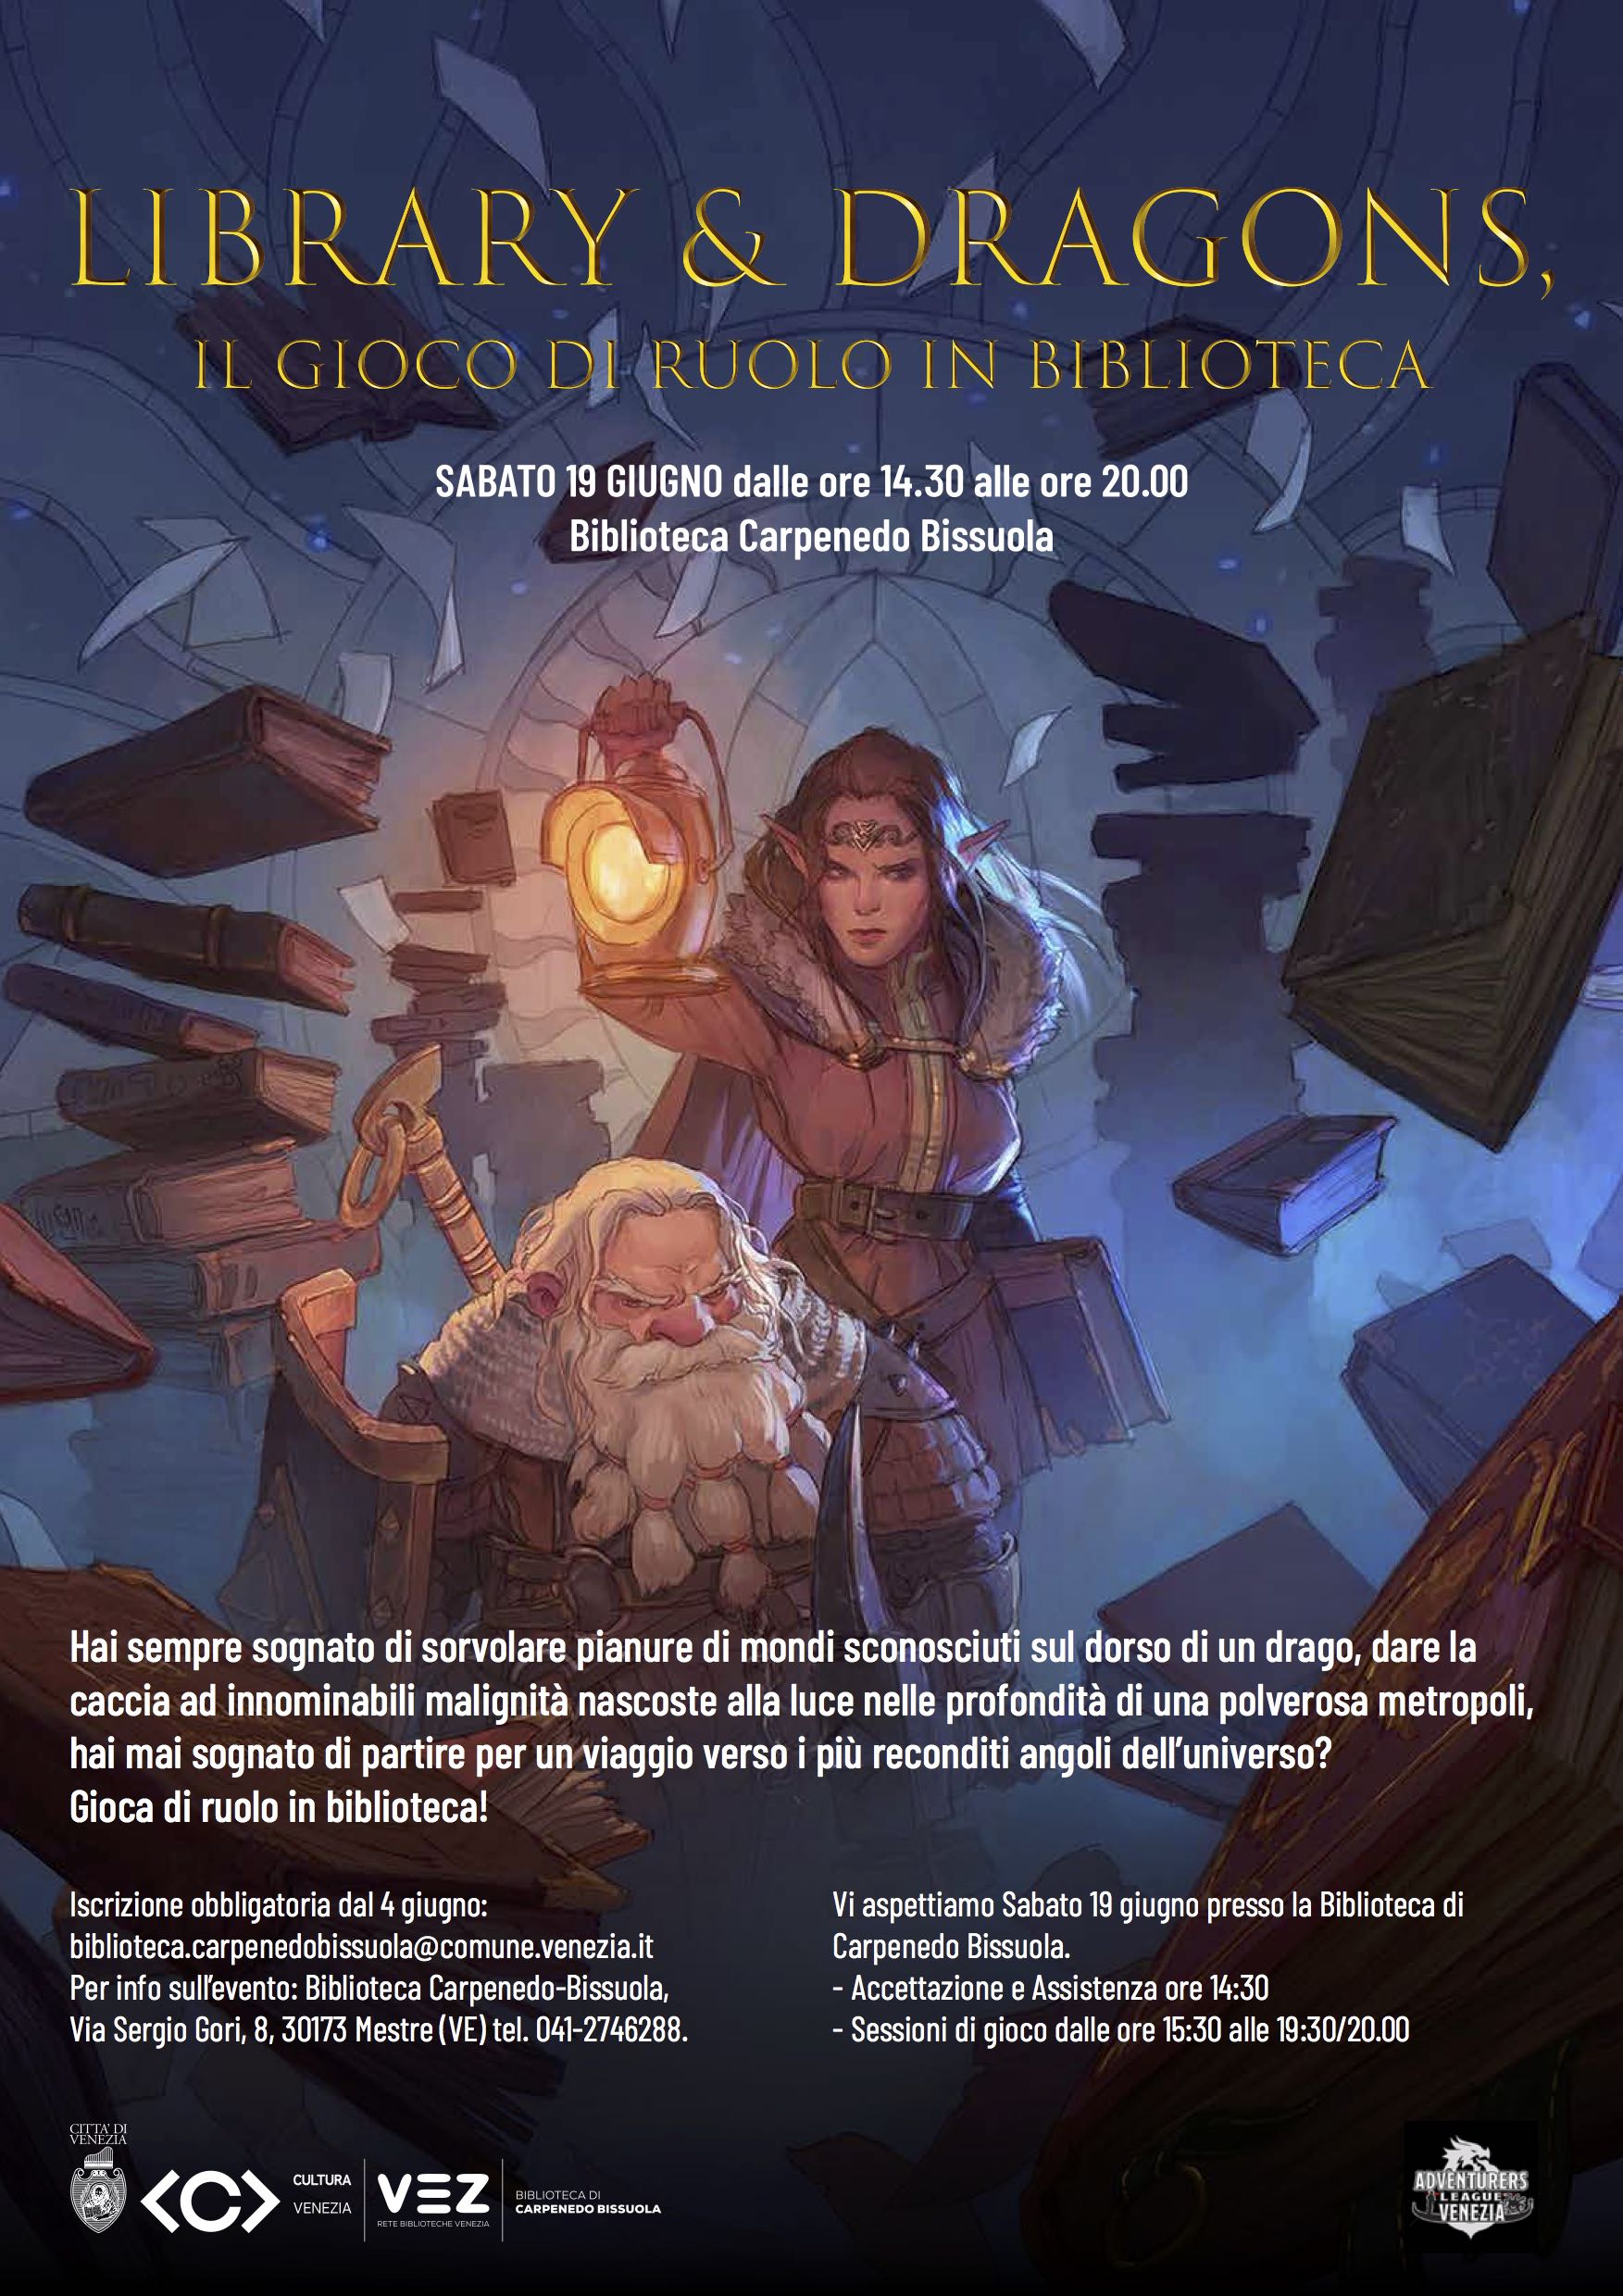 Sabato 19 giugno Library & Dragons, il gioco di Ruolo in Biblioteca  Carpenedo Bissuola - Notizie Plus